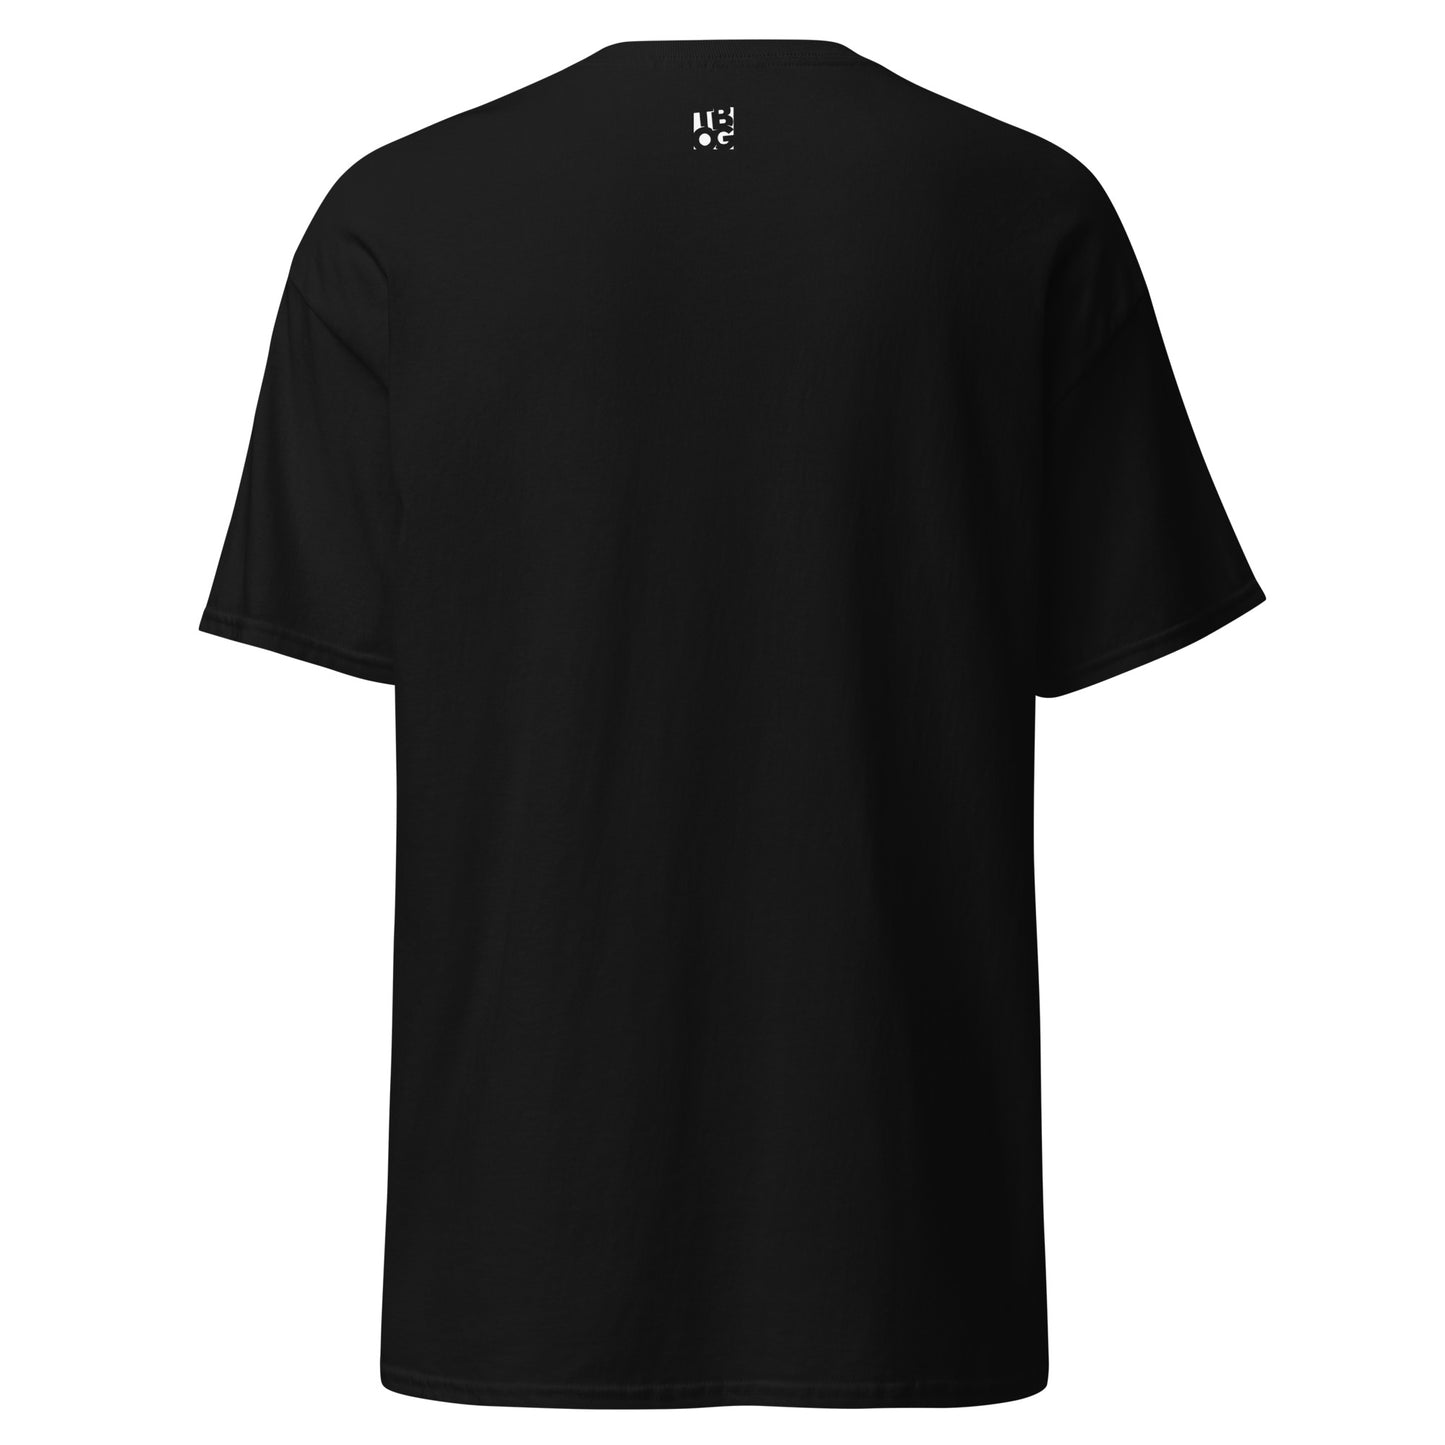 I'm Righteous T-Shirt(Black)